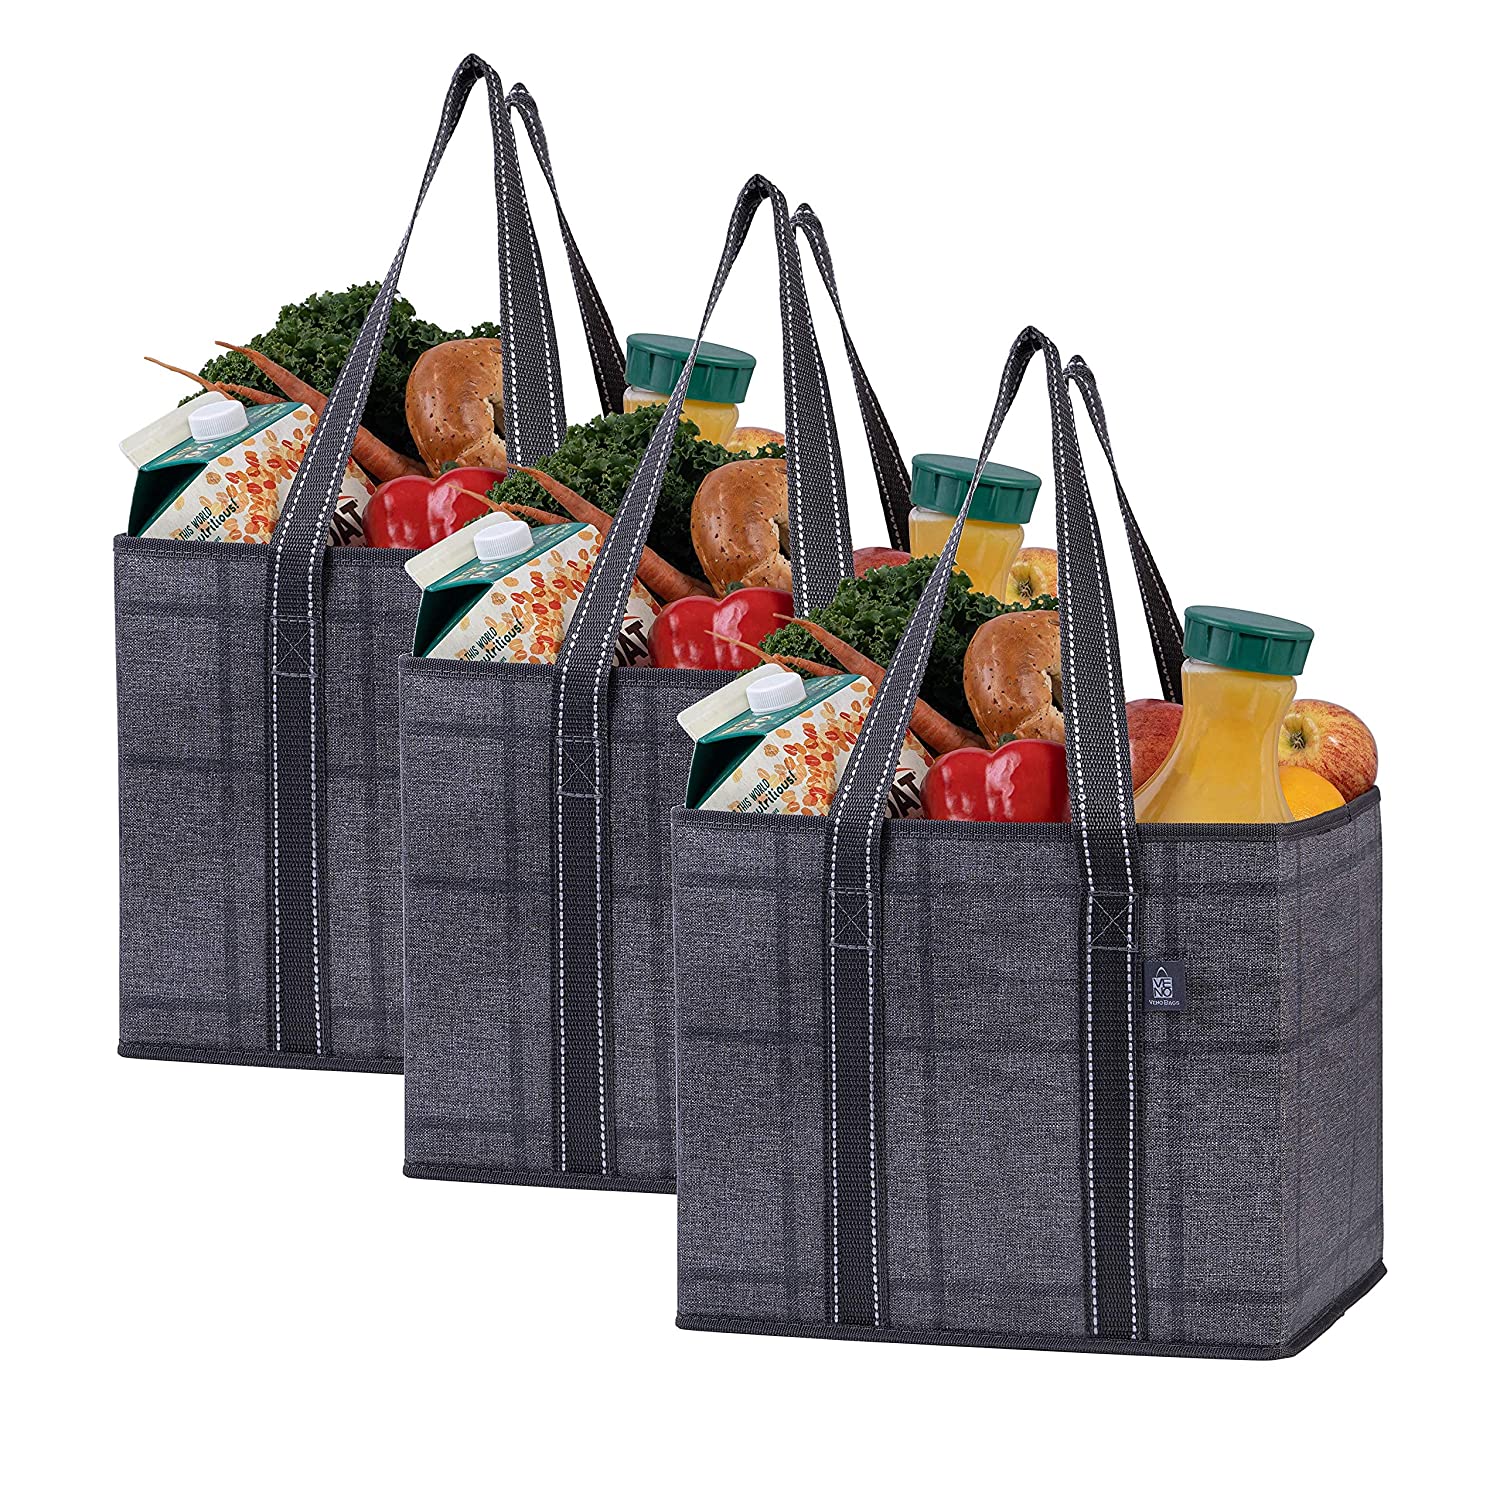 The VENO Reusable Grocery Shopping Bag